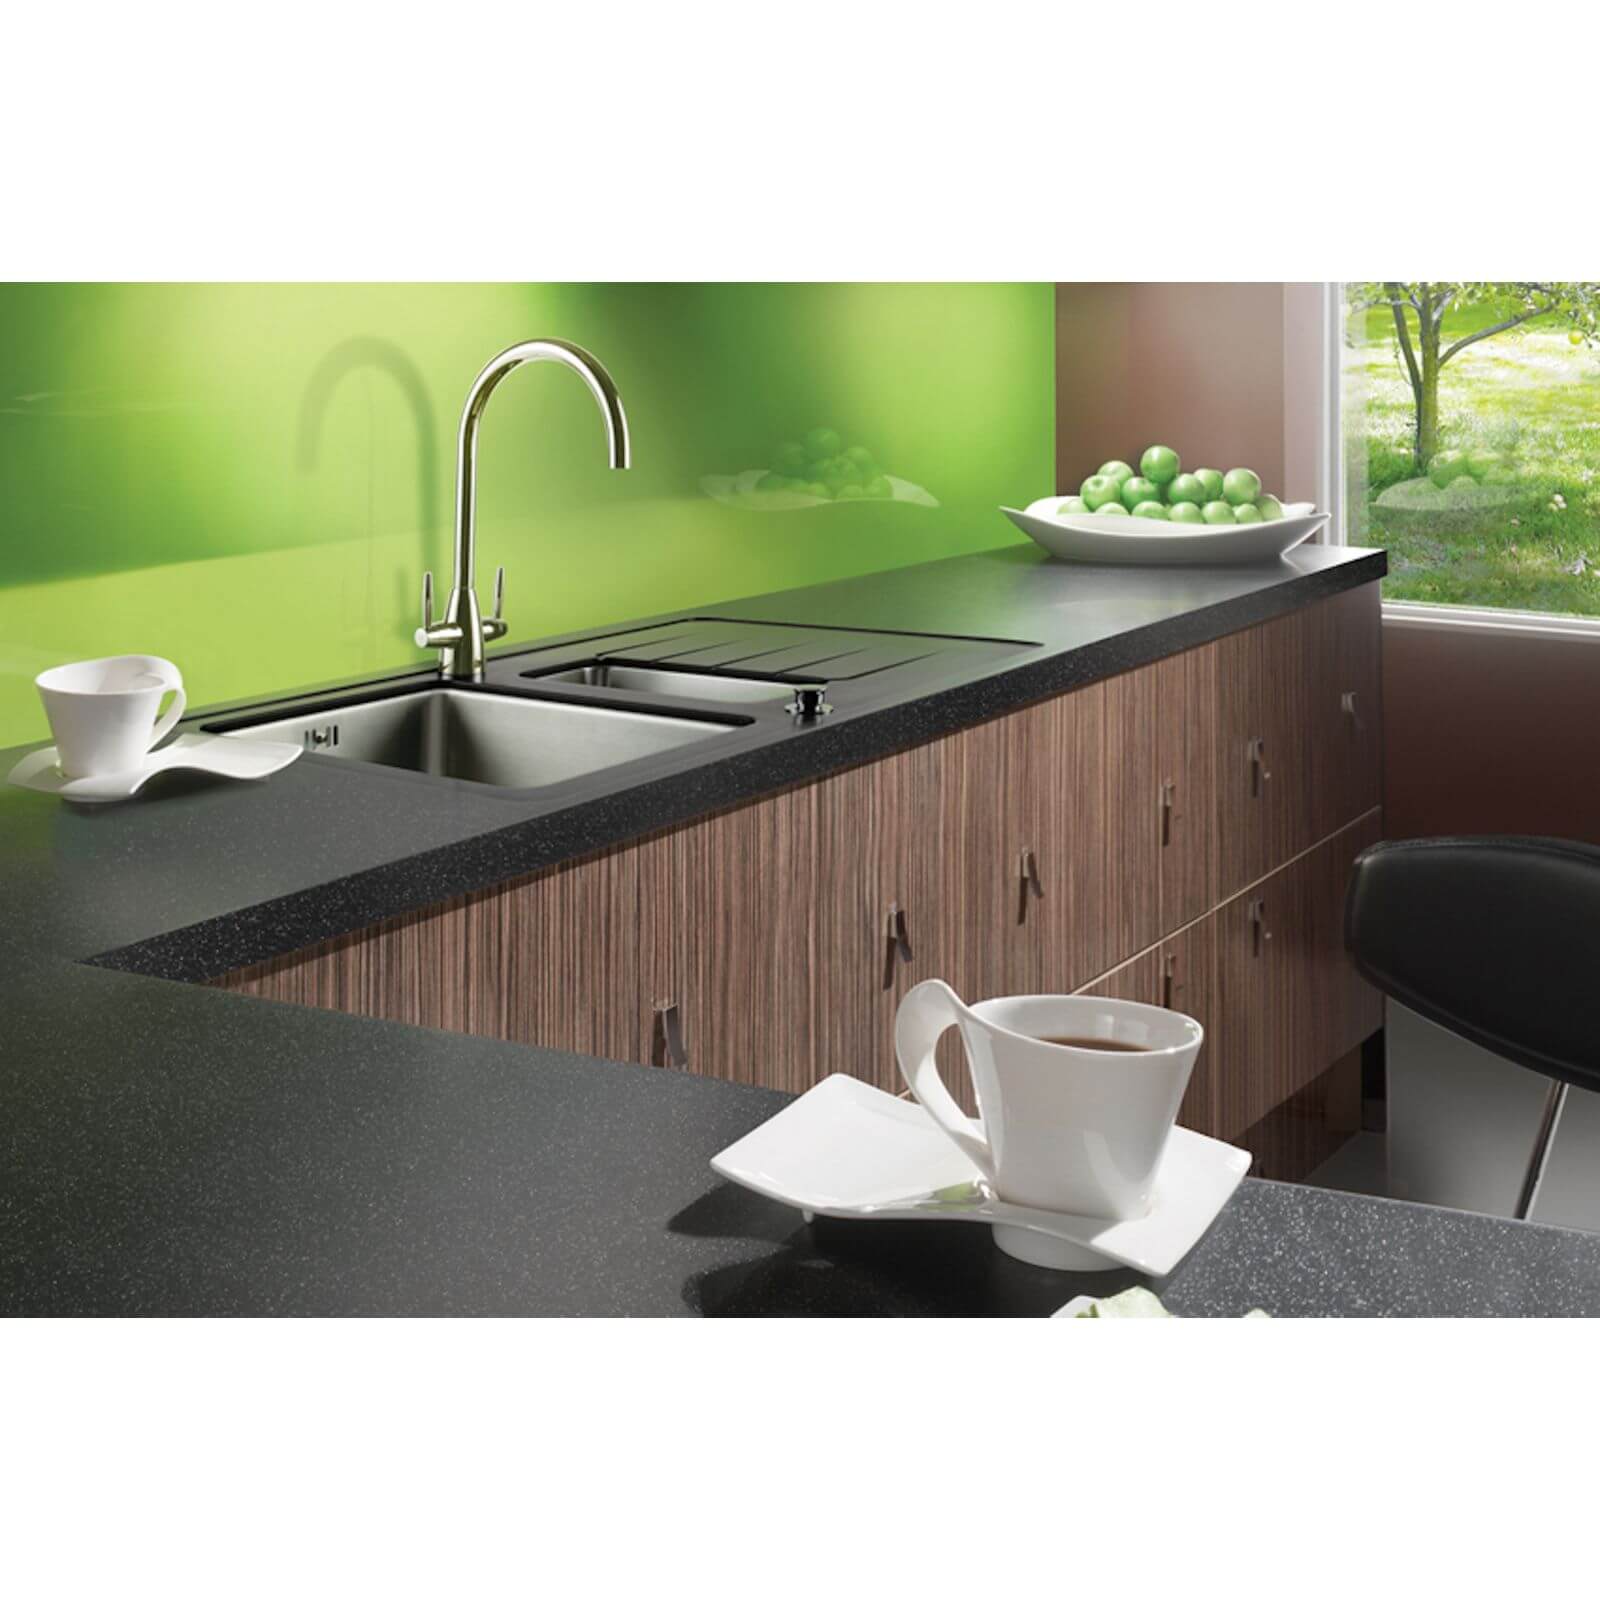 Maia Galaxy Kitchen Sink Worktop - 1.5 Designer Right Hand Bowl - 3600 x 650 x 28mm